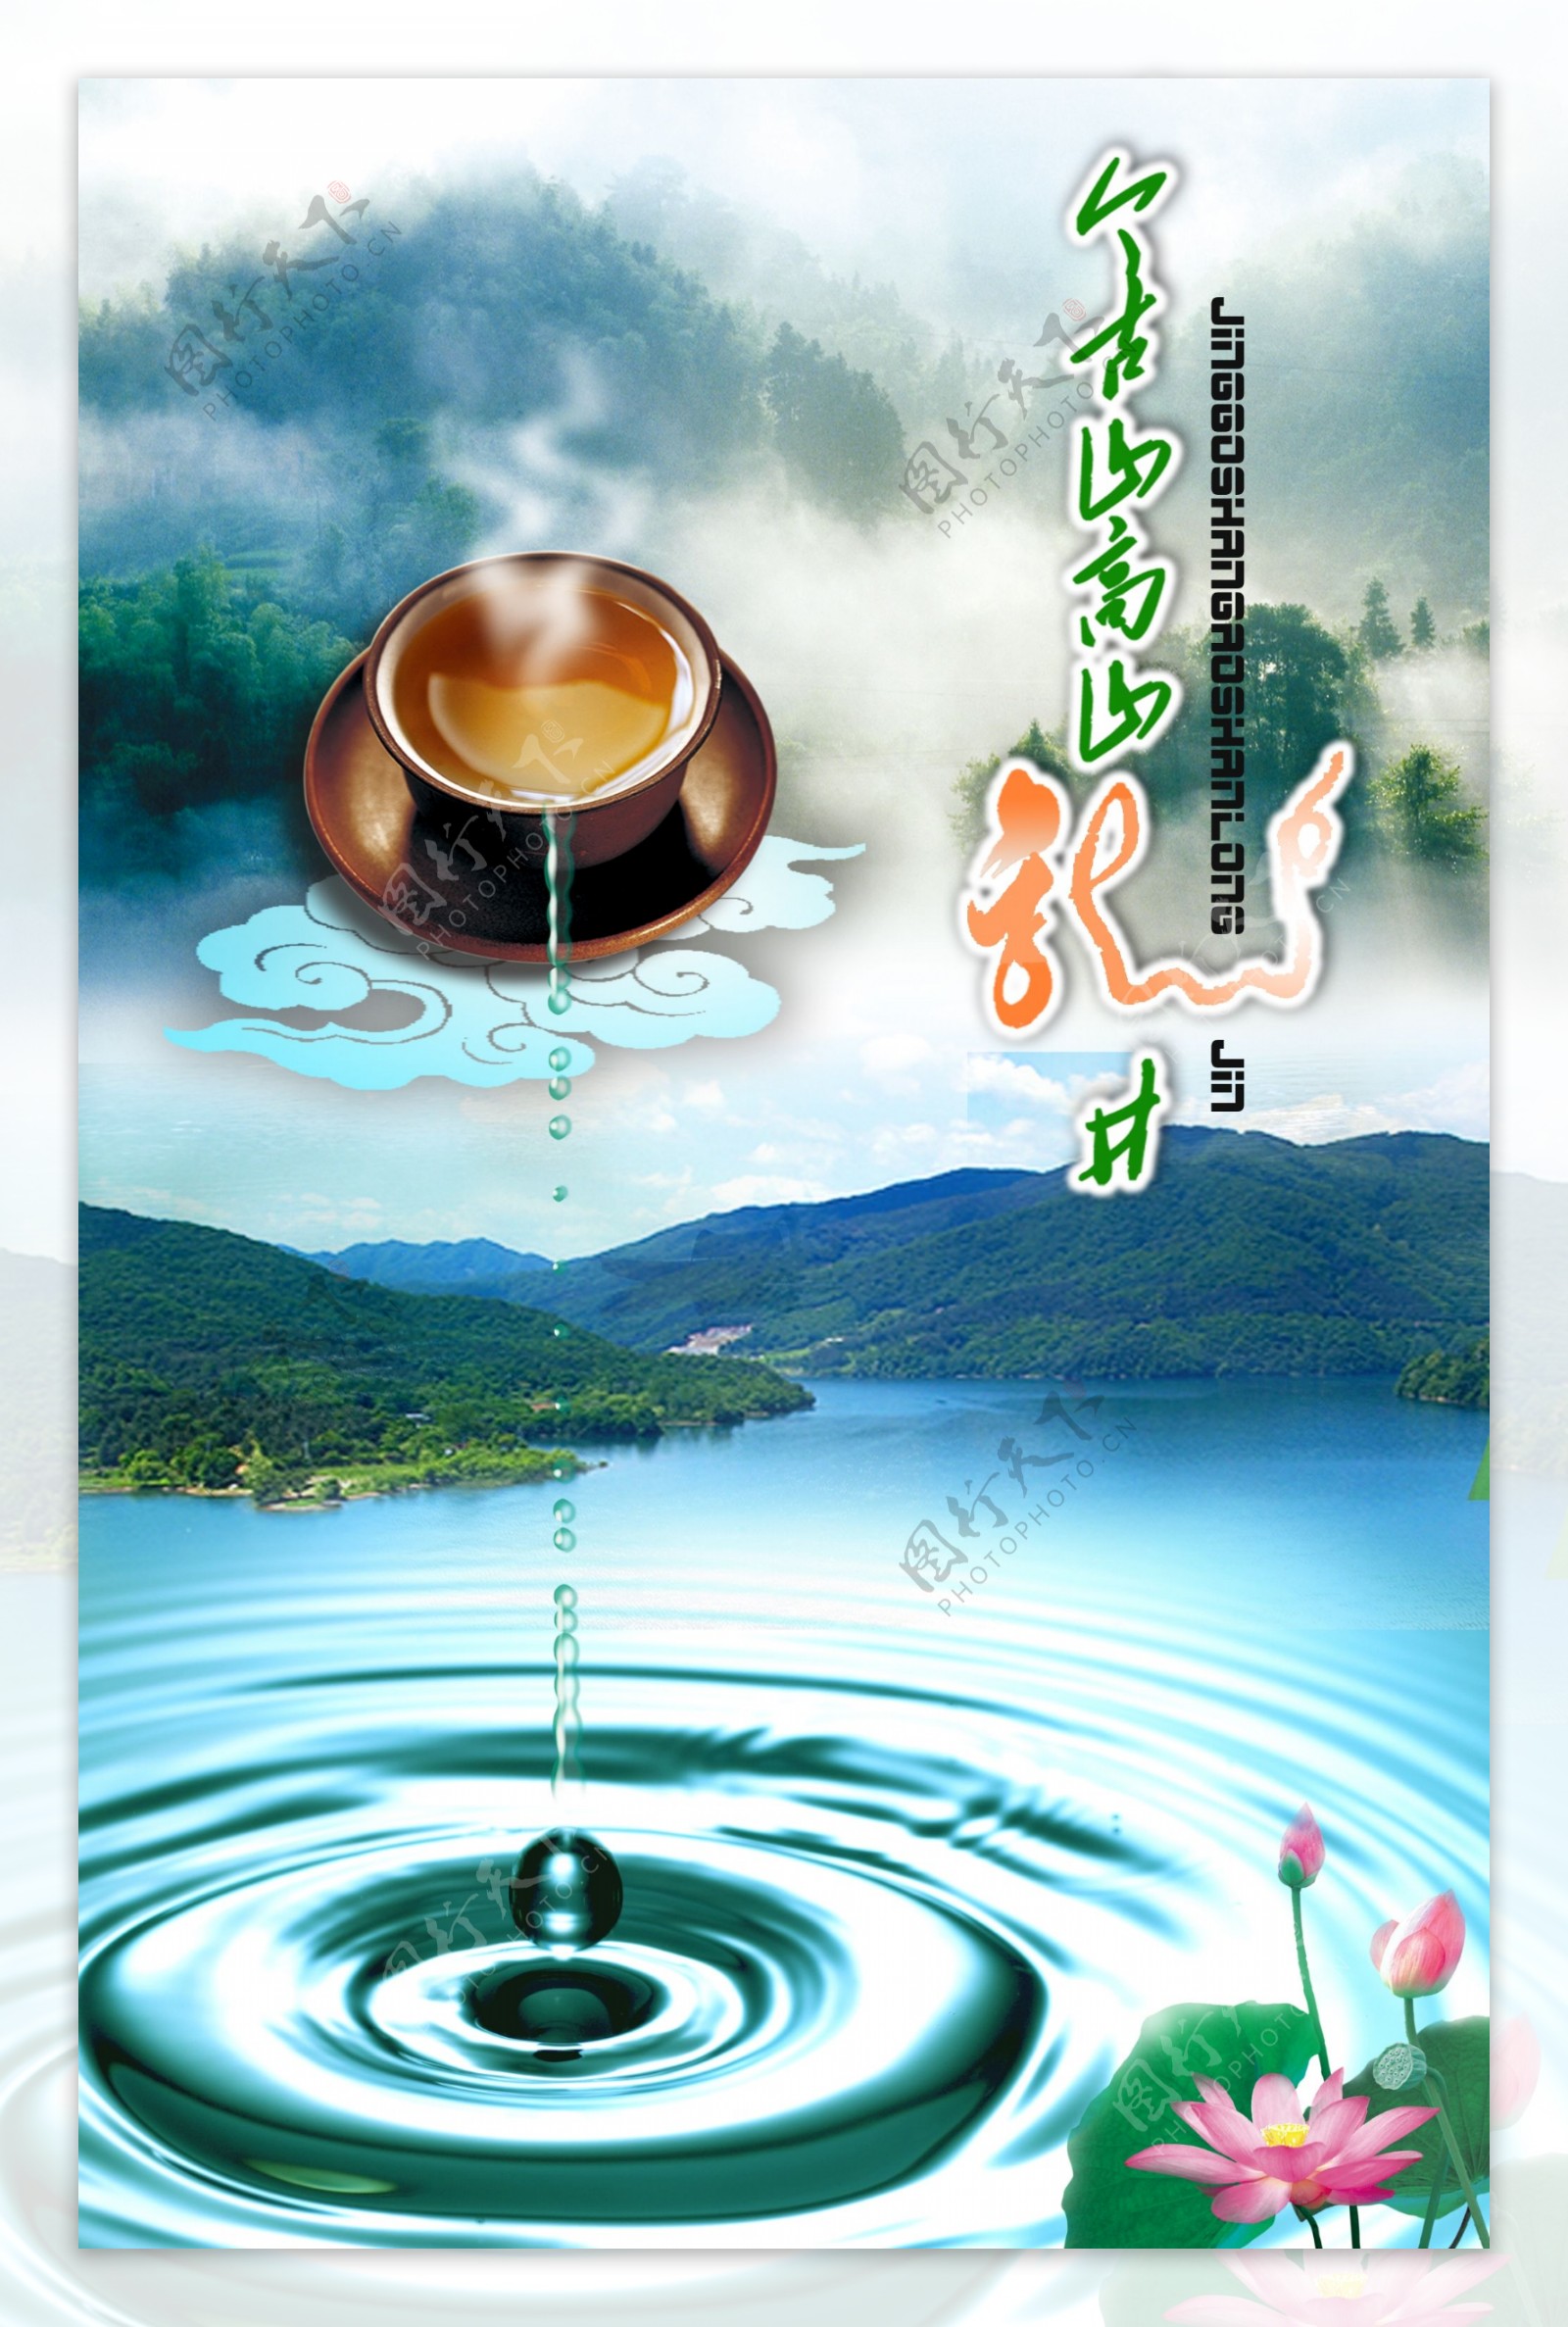 龙井茶海报设计